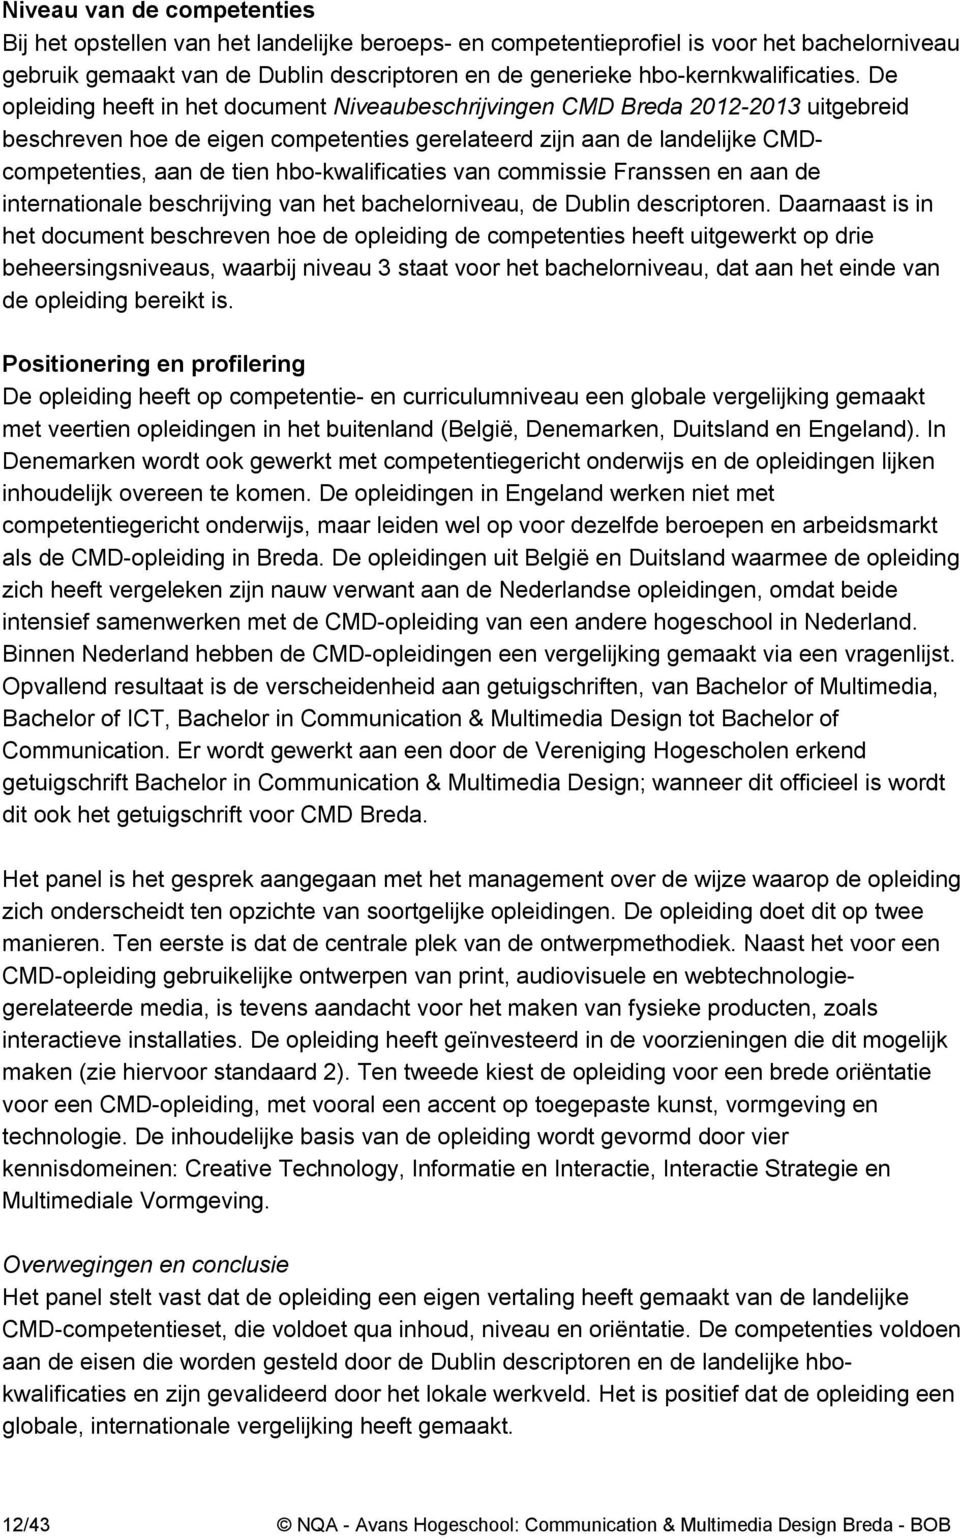 De opleiding heeft in het document Niveaubeschrijvingen CMD Breda 2012-2013 uitgebreid beschreven hoe de eigen competenties gerelateerd zijn aan de landelijke CMDcompetenties, aan de tien